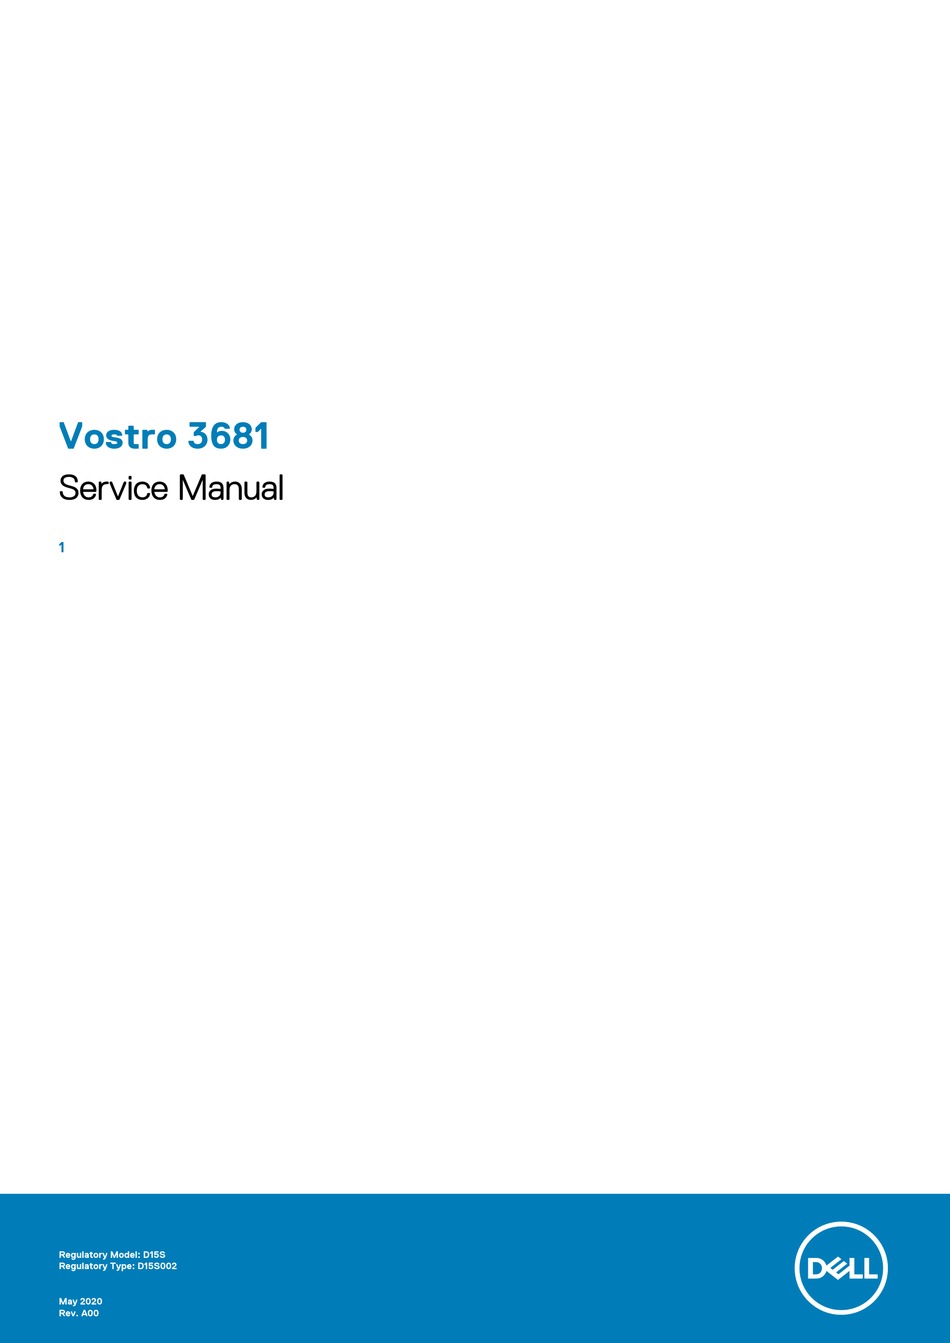 DELL VOSTRO 3681 SERVICE MANUAL Pdf Download | ManualsLib